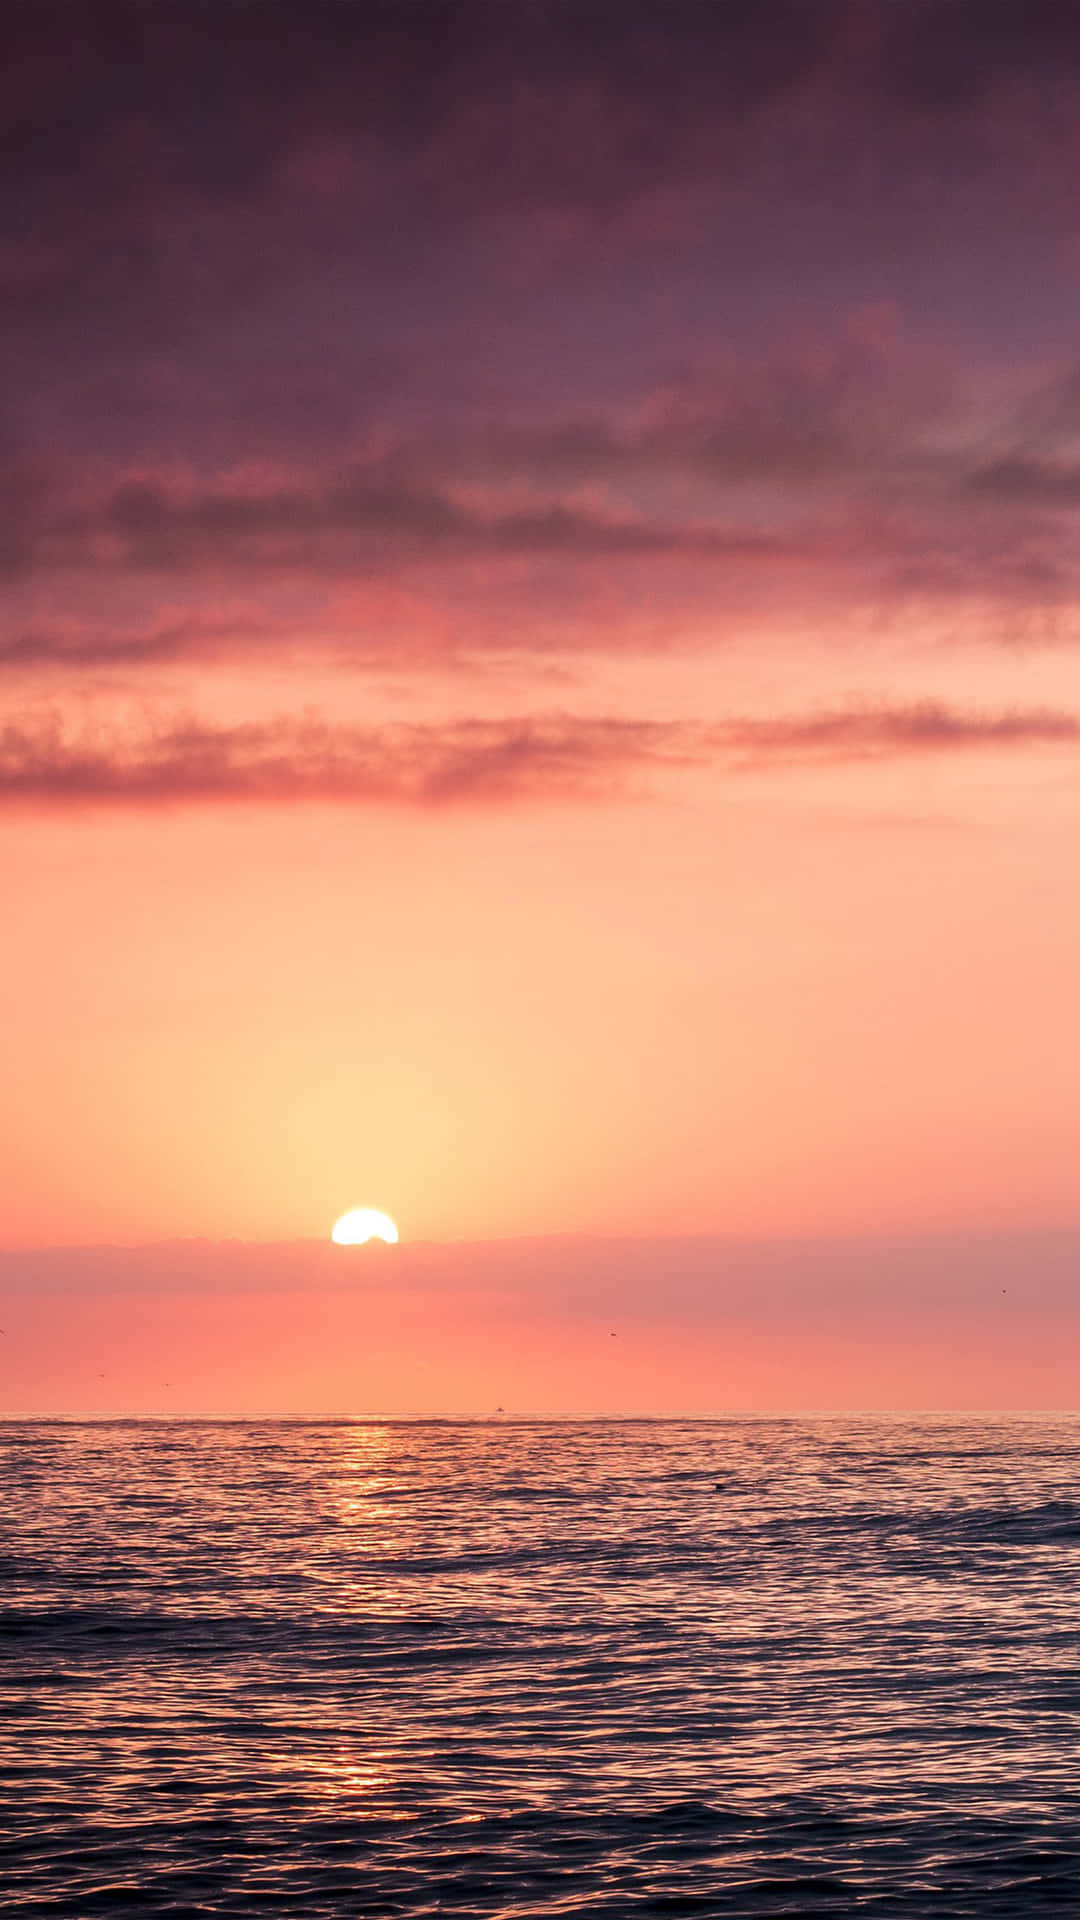 Tretensie In Einen Wahrhaft Majestätischen Sonnenuntergang Mit Einem Wunderschönen Rosa Strand In Der Ferne Ein. Wallpaper